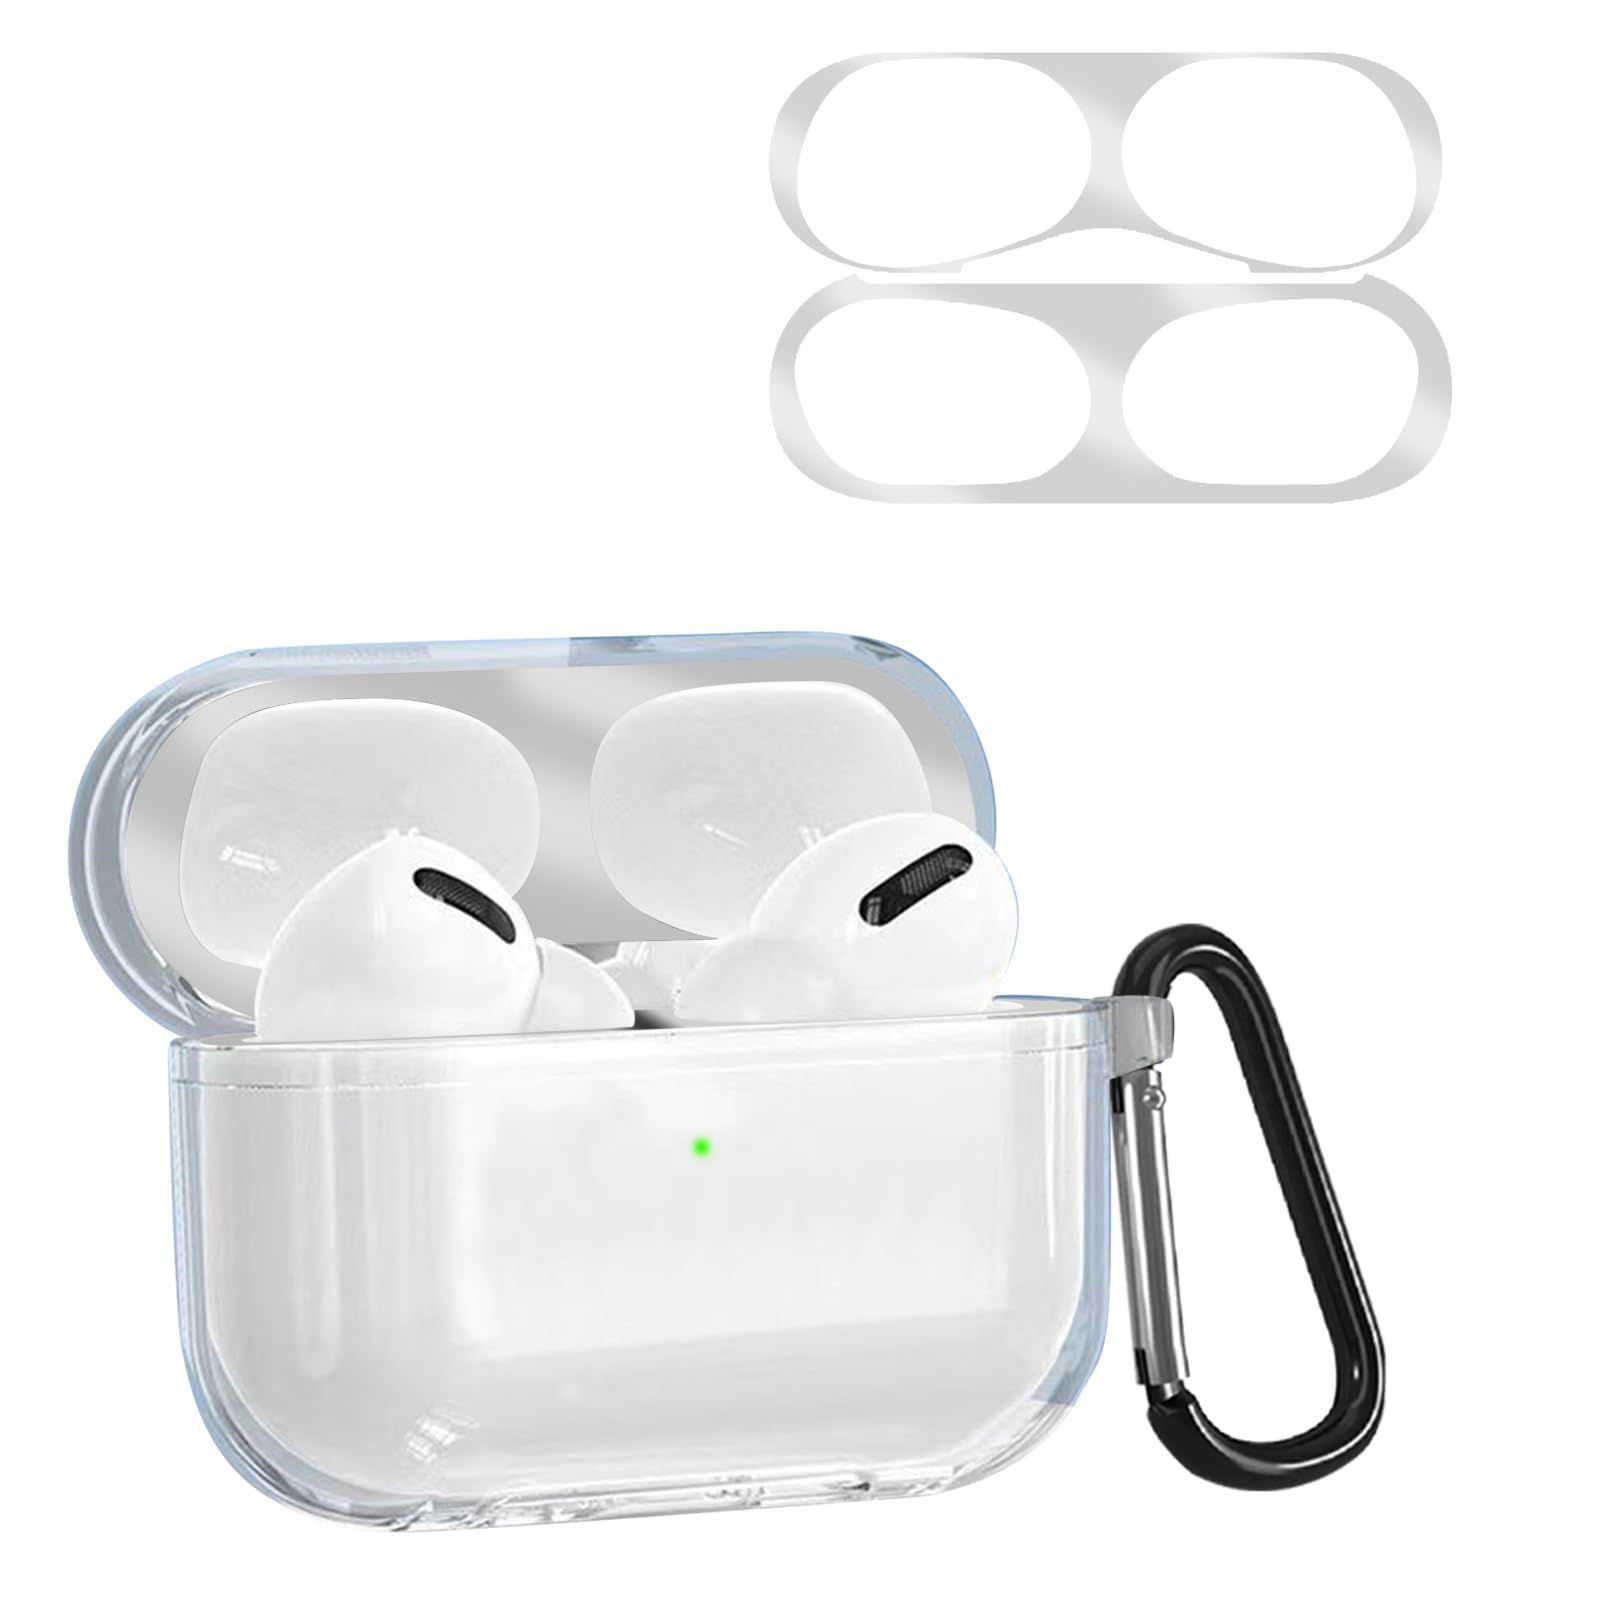 Apple Airpods Pro ダストガード シルバー 防塵 保護シール